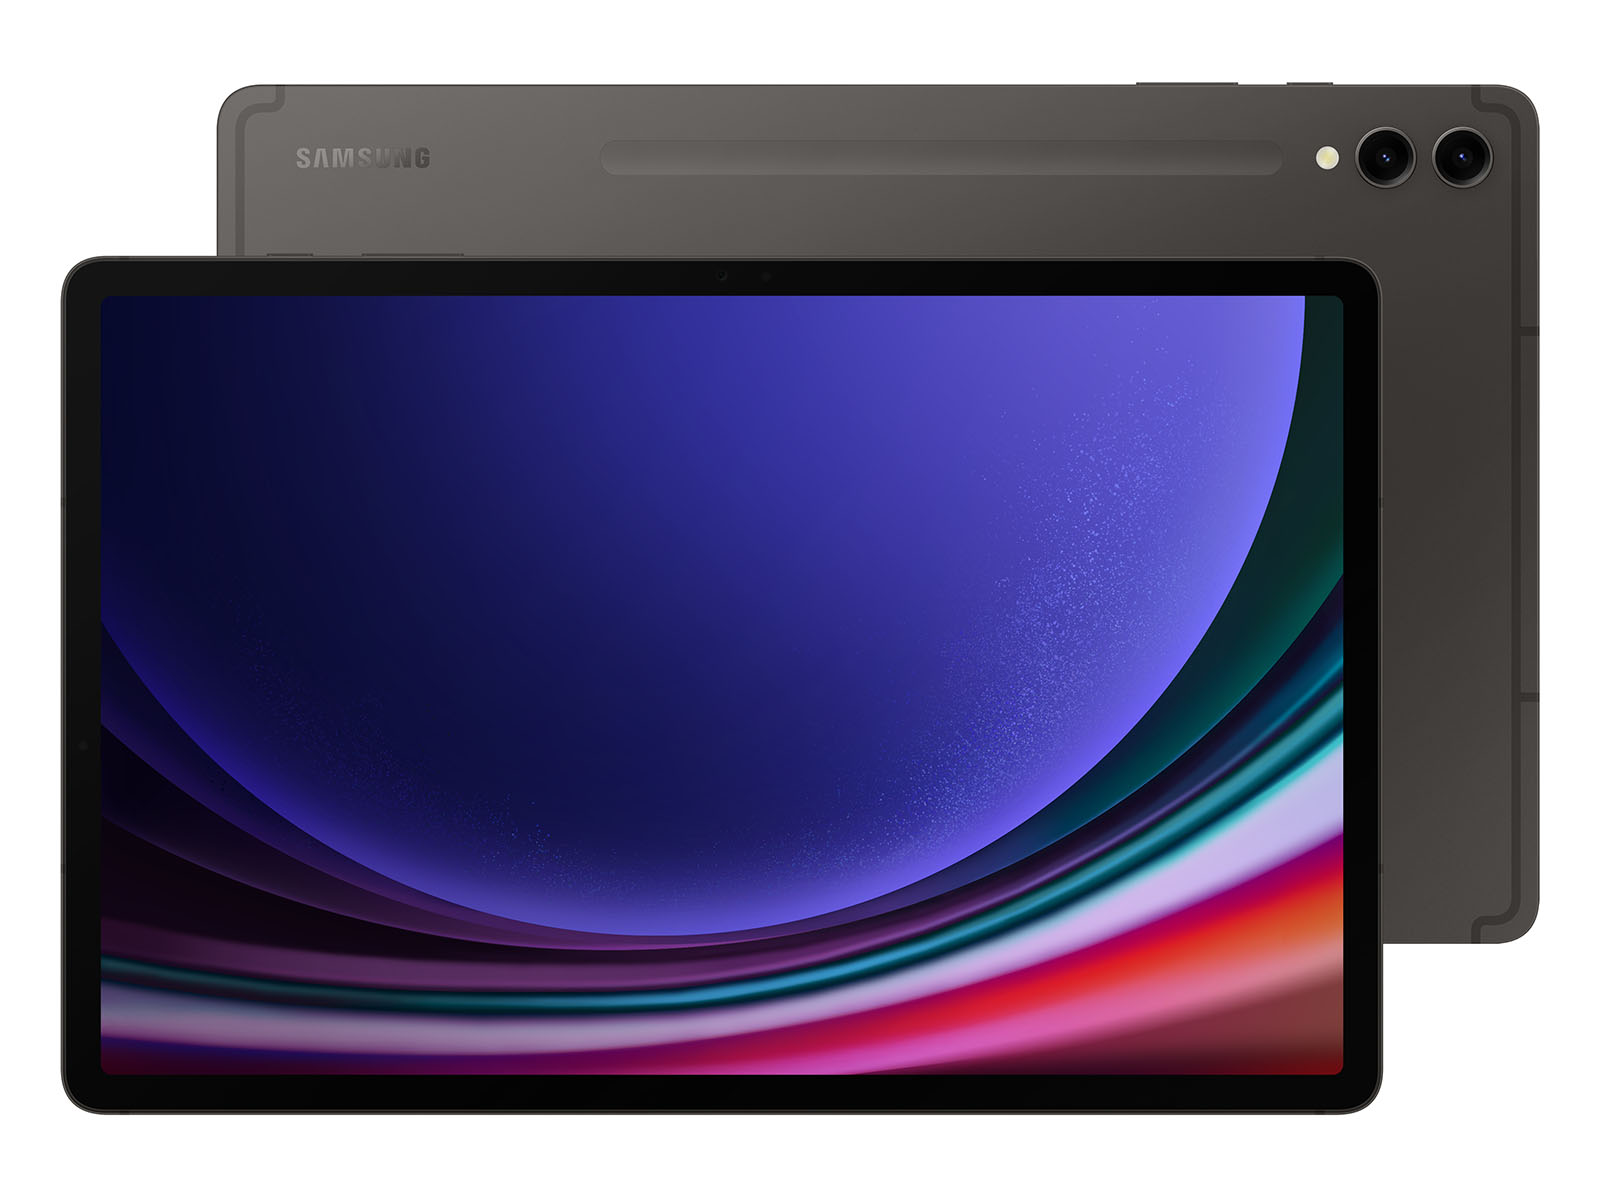 Galaxy Tab S5e 10.5, 64GB, Black (Wi-Fi) Tablets - SM-T720NZKAXAR 